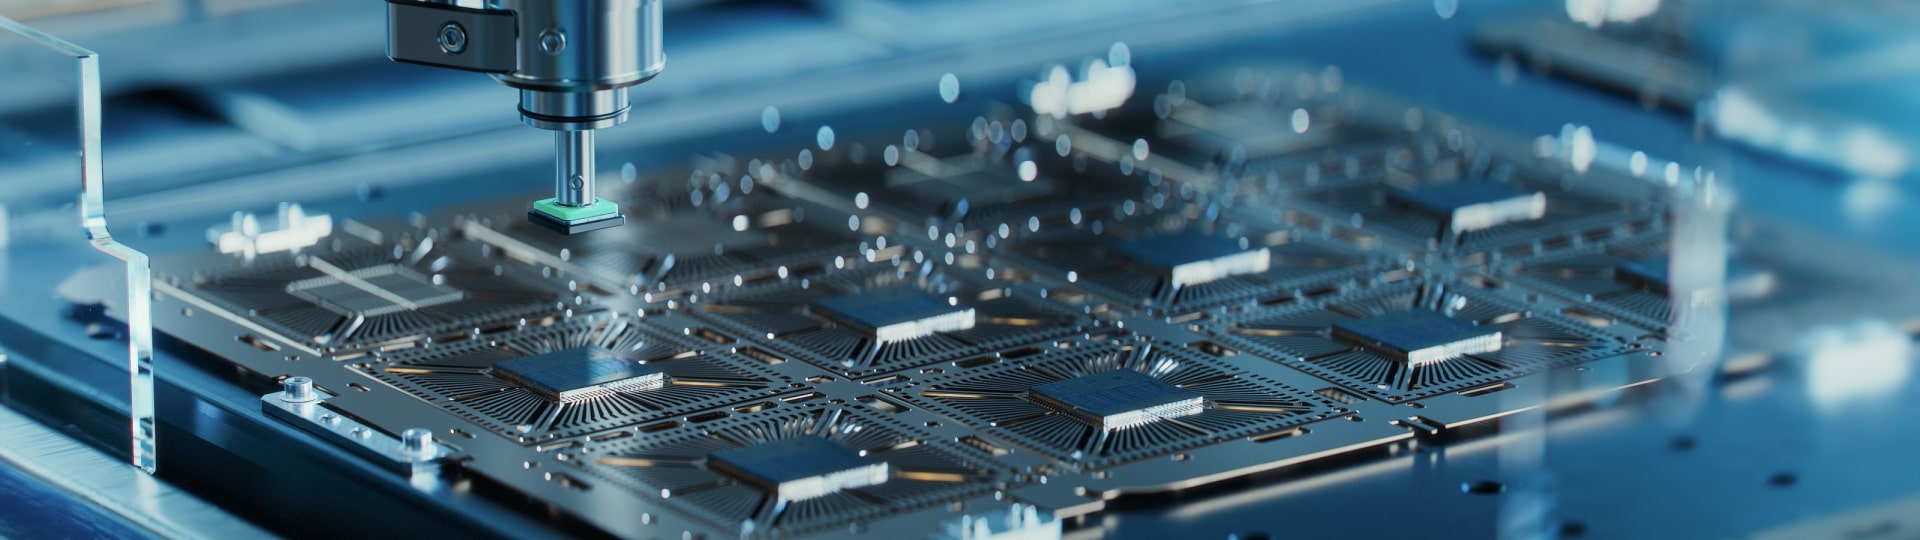 Intel postaví v Polsku továrnu na čipy za 4,6 miliardy dolarů